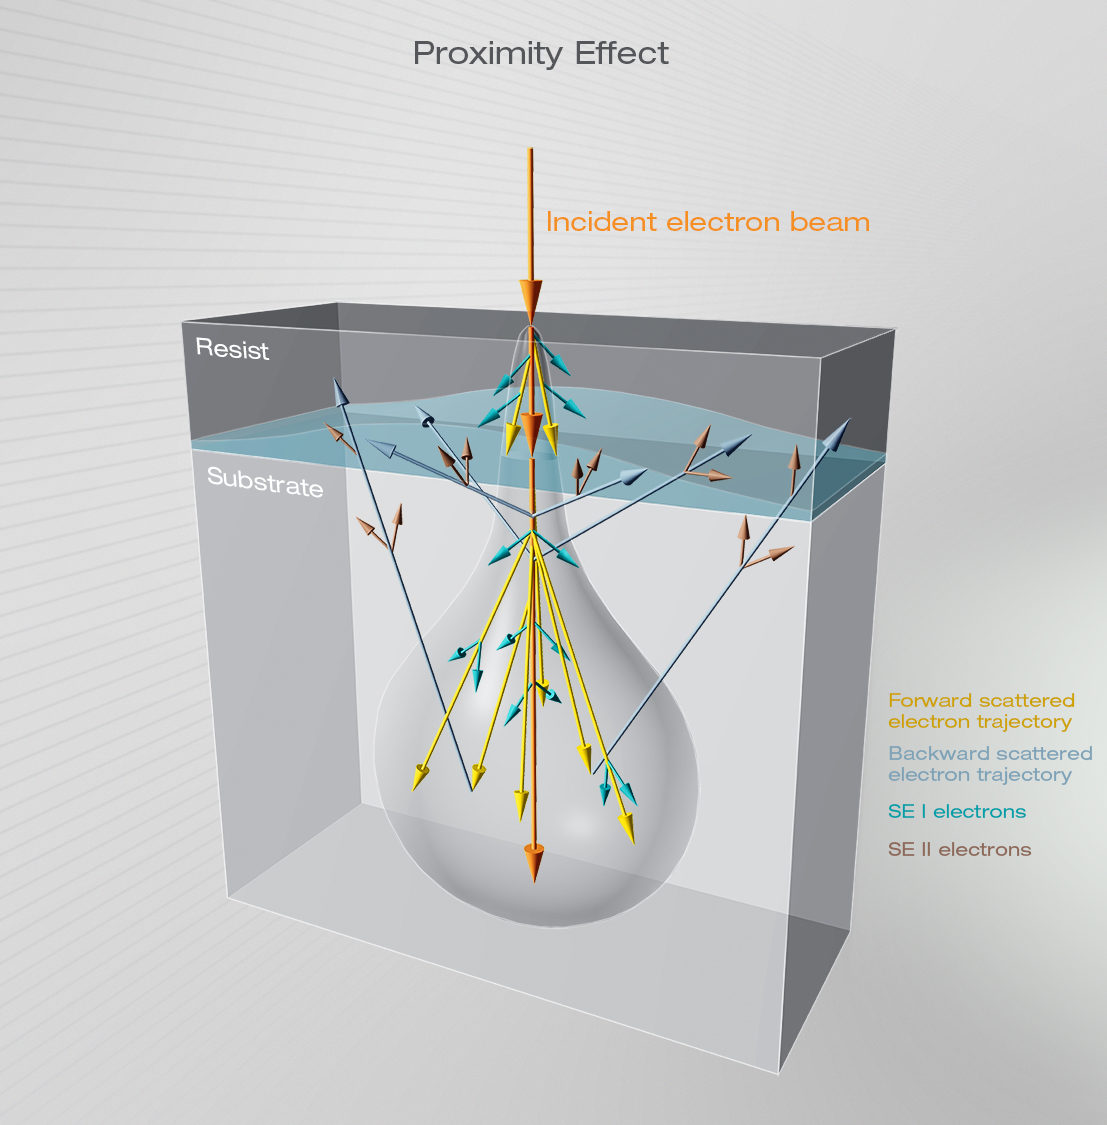 Illustration explaining the proximity effect